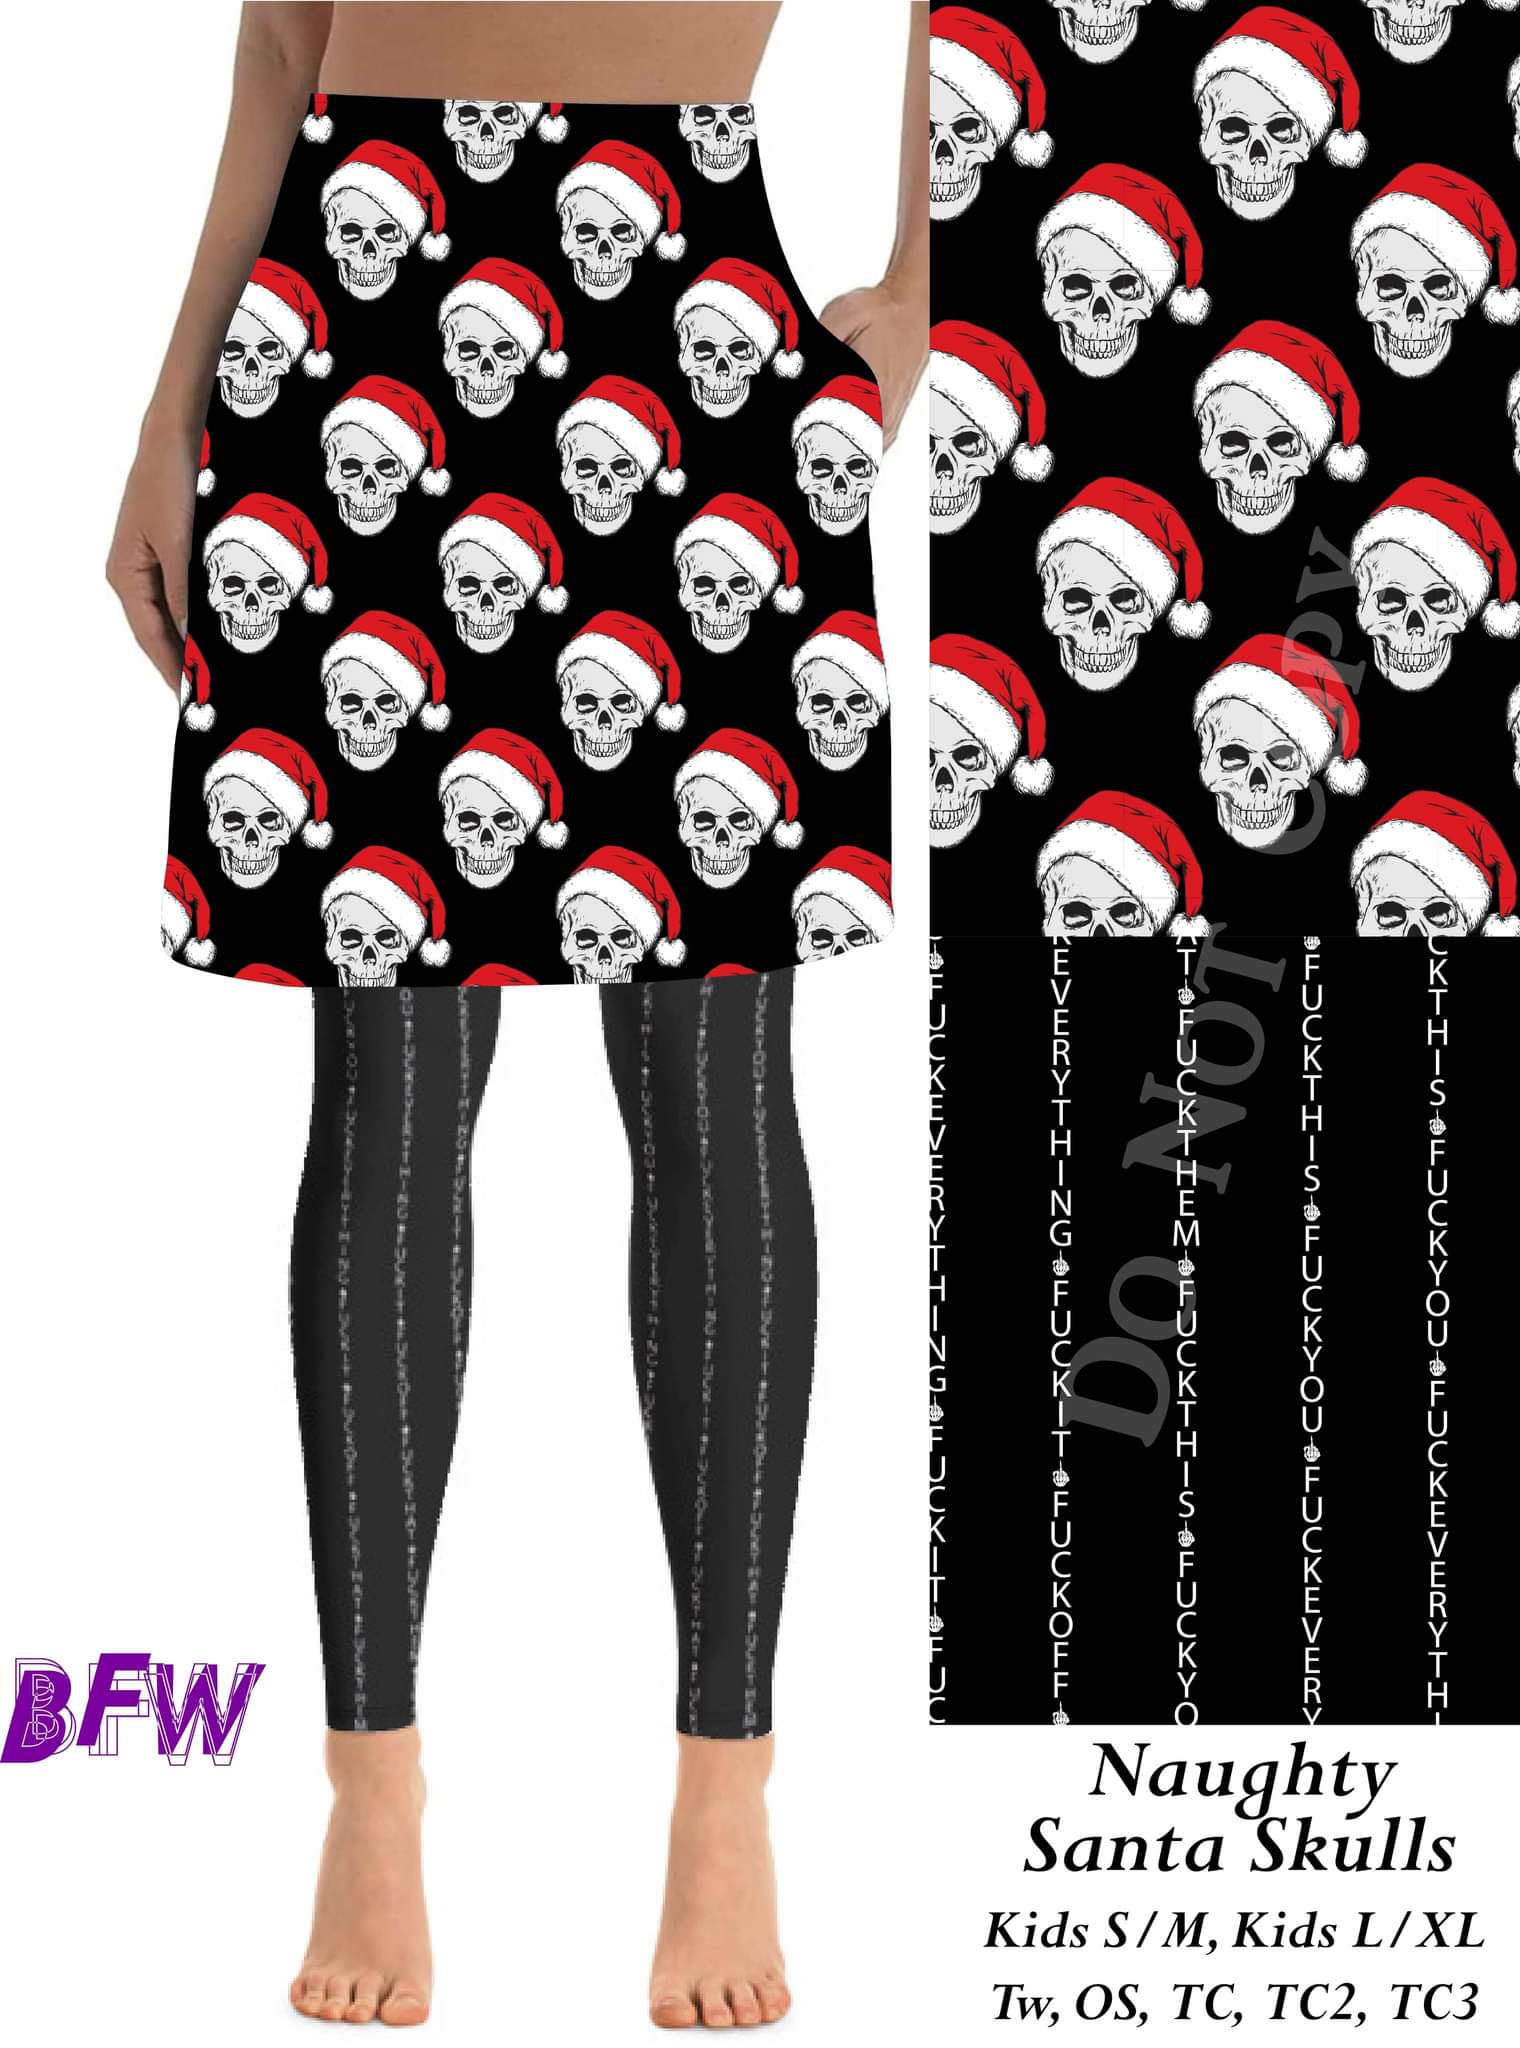 Santa Skulls (explict leggings) skirted leggings